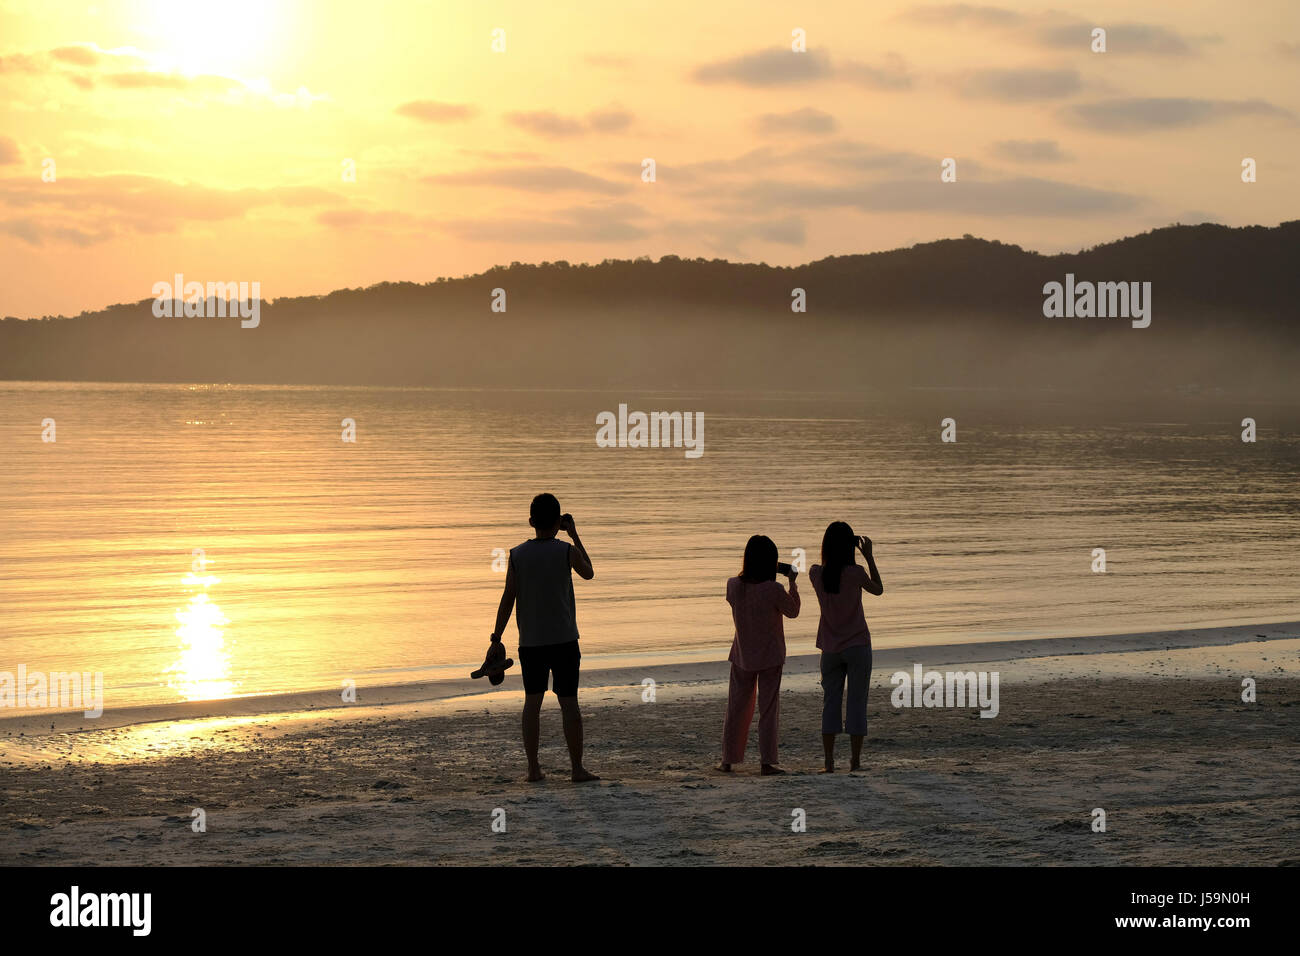 Photos de tournage touristes un coucher de soleil. L'Asie, l'Asie du Sud-Est, le Cambodge, l'île de Koh Rong Samloen Banque D'Images